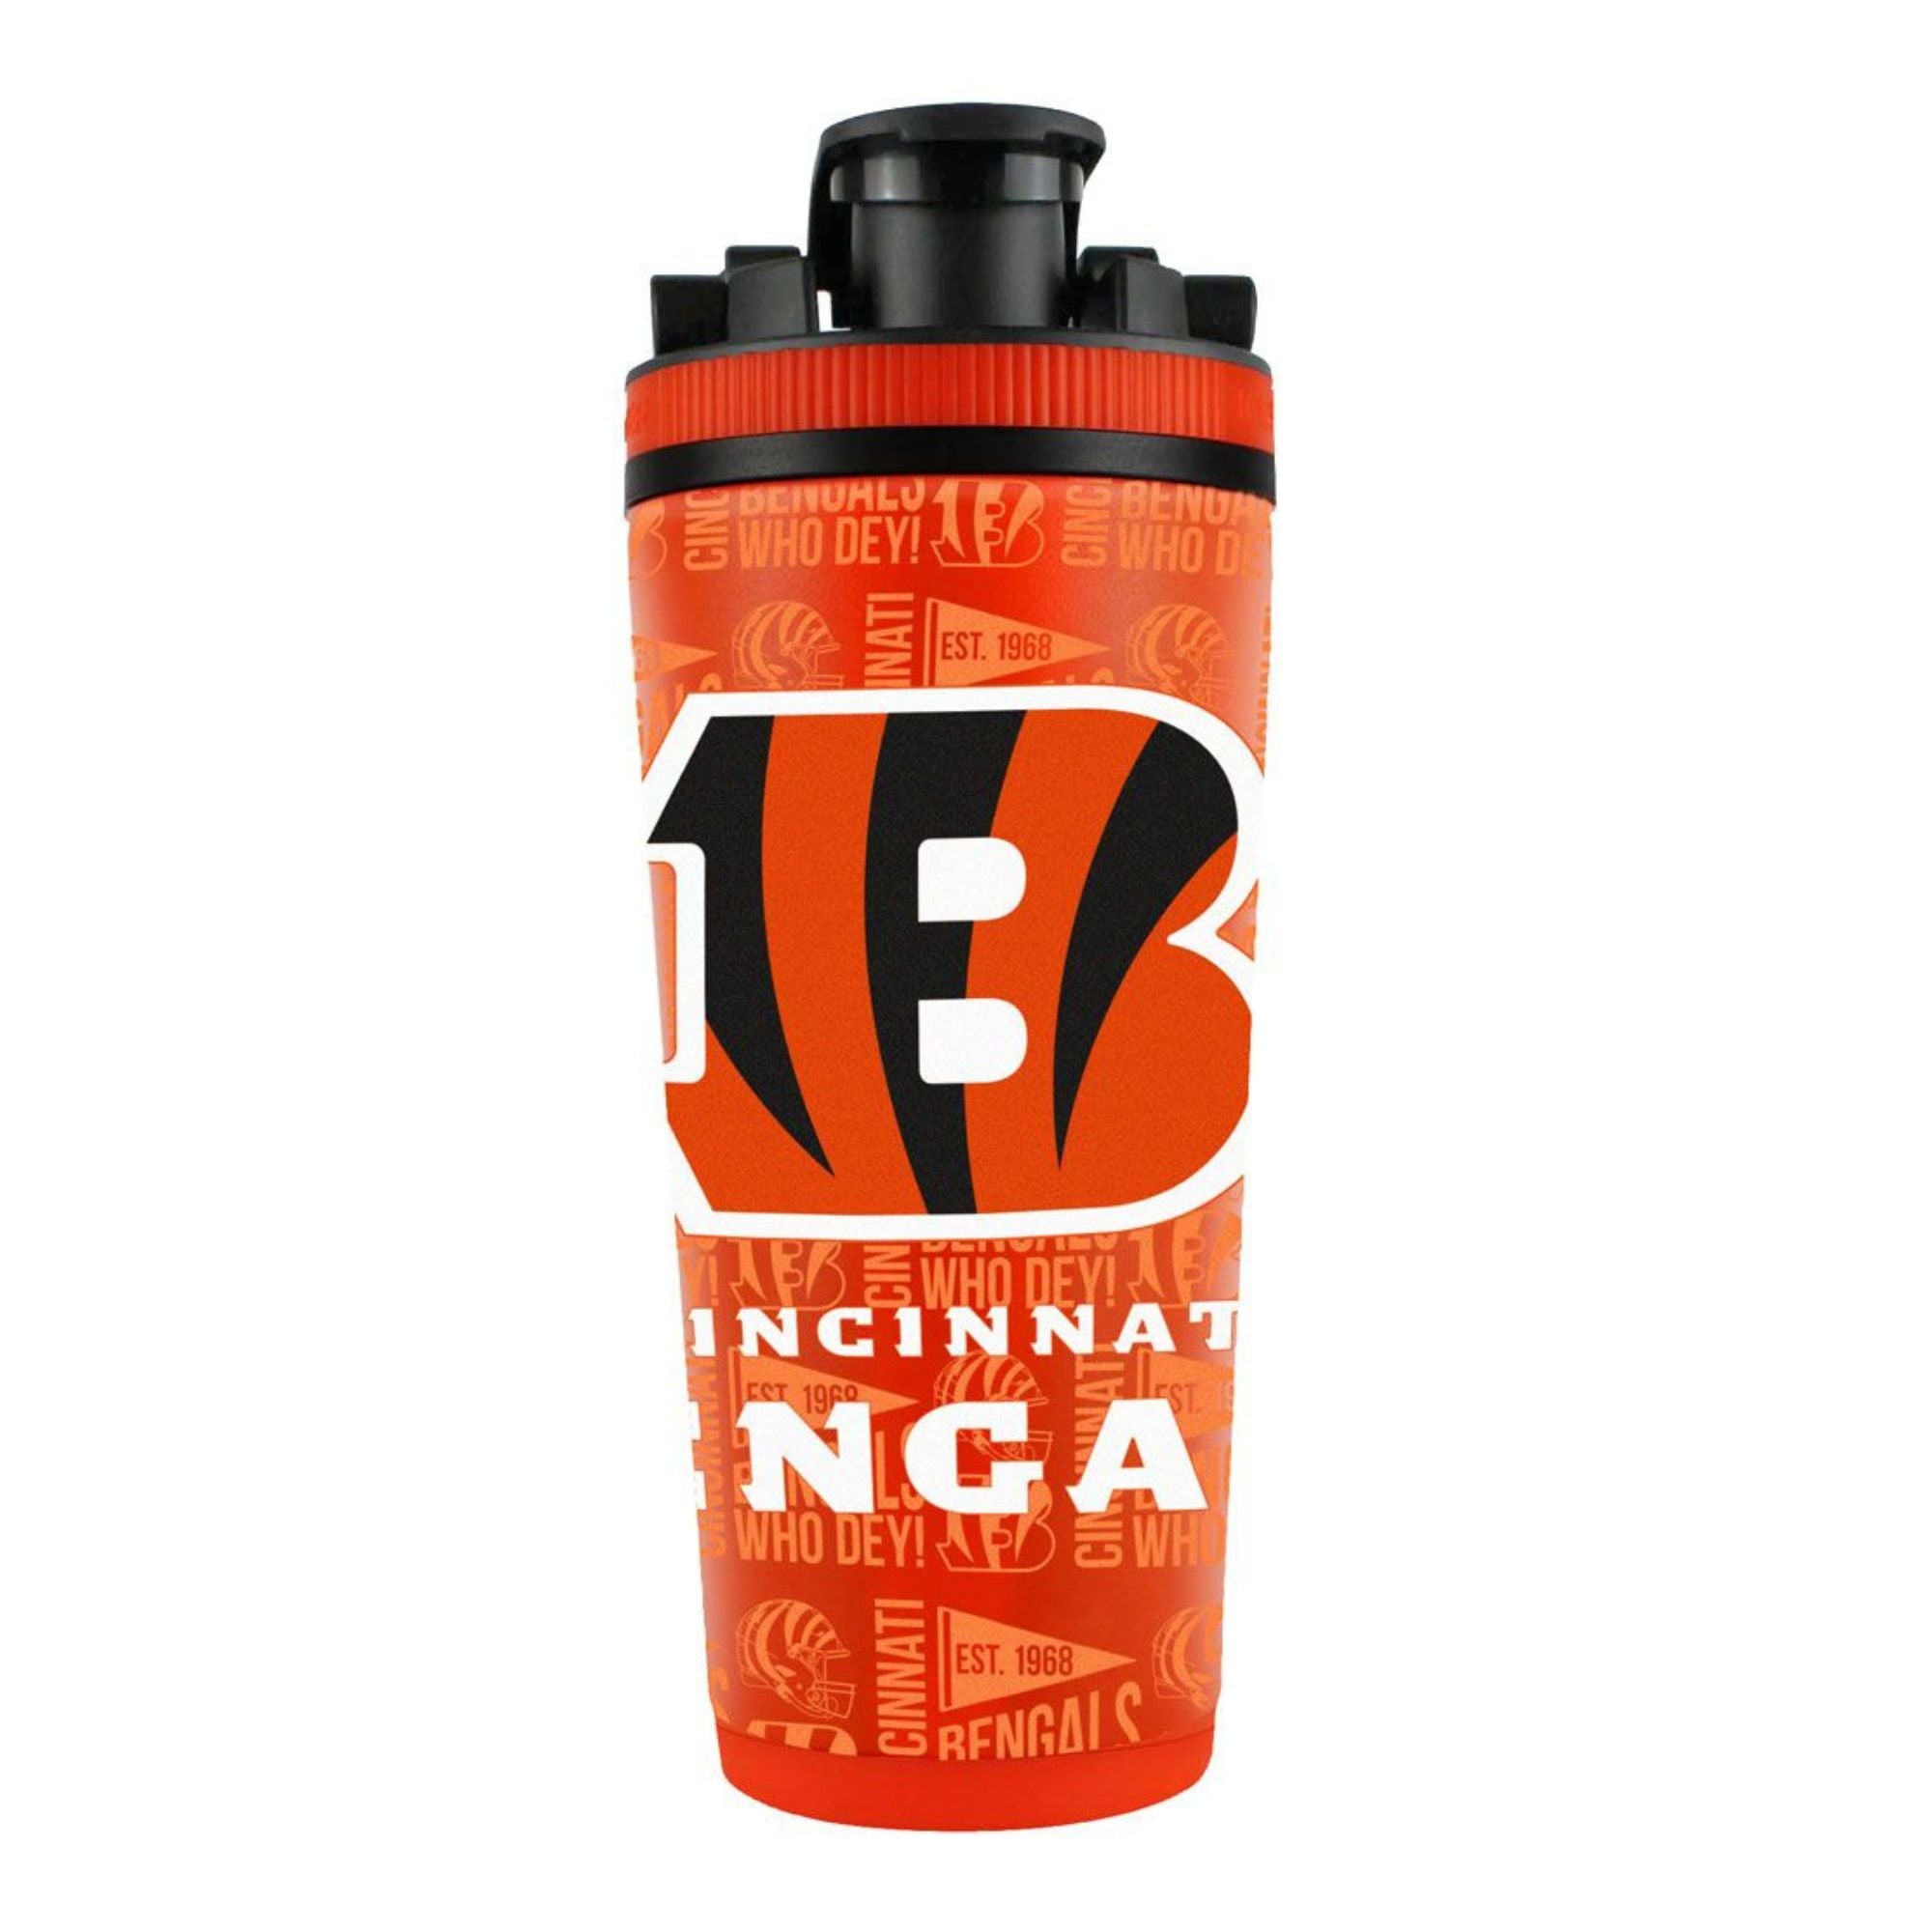 Officially Licensed Cincinnati Bengals 4D Ice Shaker